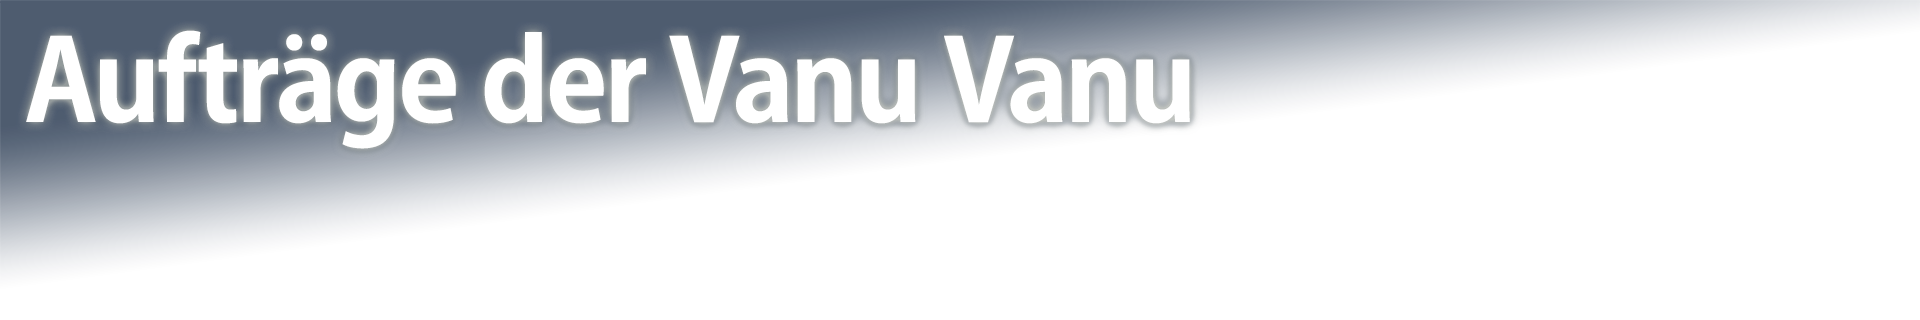 Aufträge der Vanu Vanu